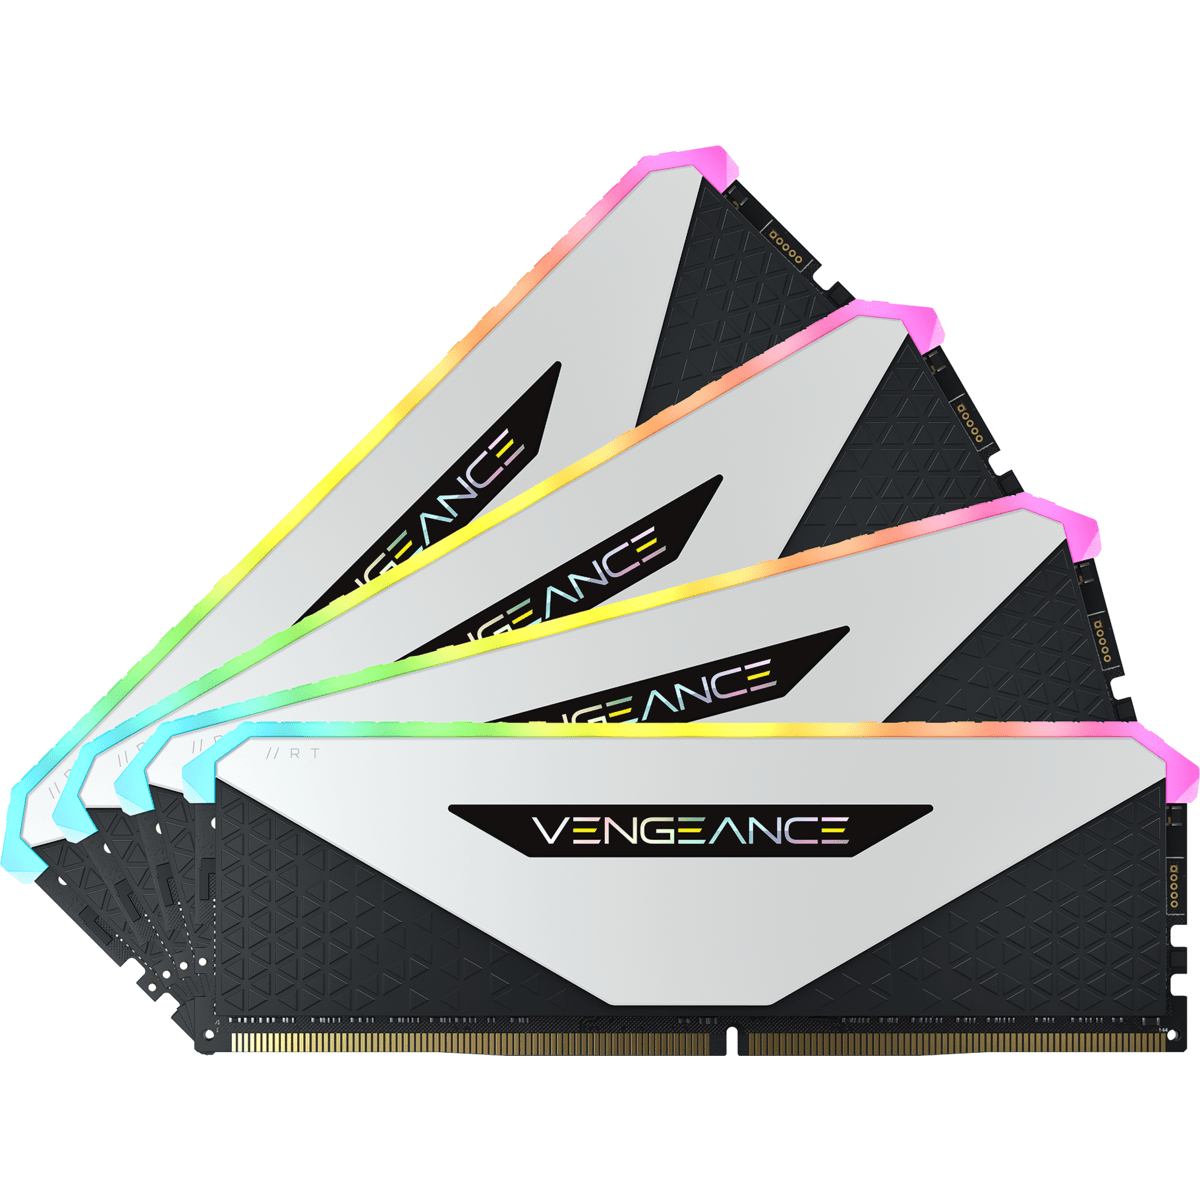 16-20-20-38 DDR4 64 Speicher-Kit 4x16GB, AMD 1.35V, GB CORSAIR